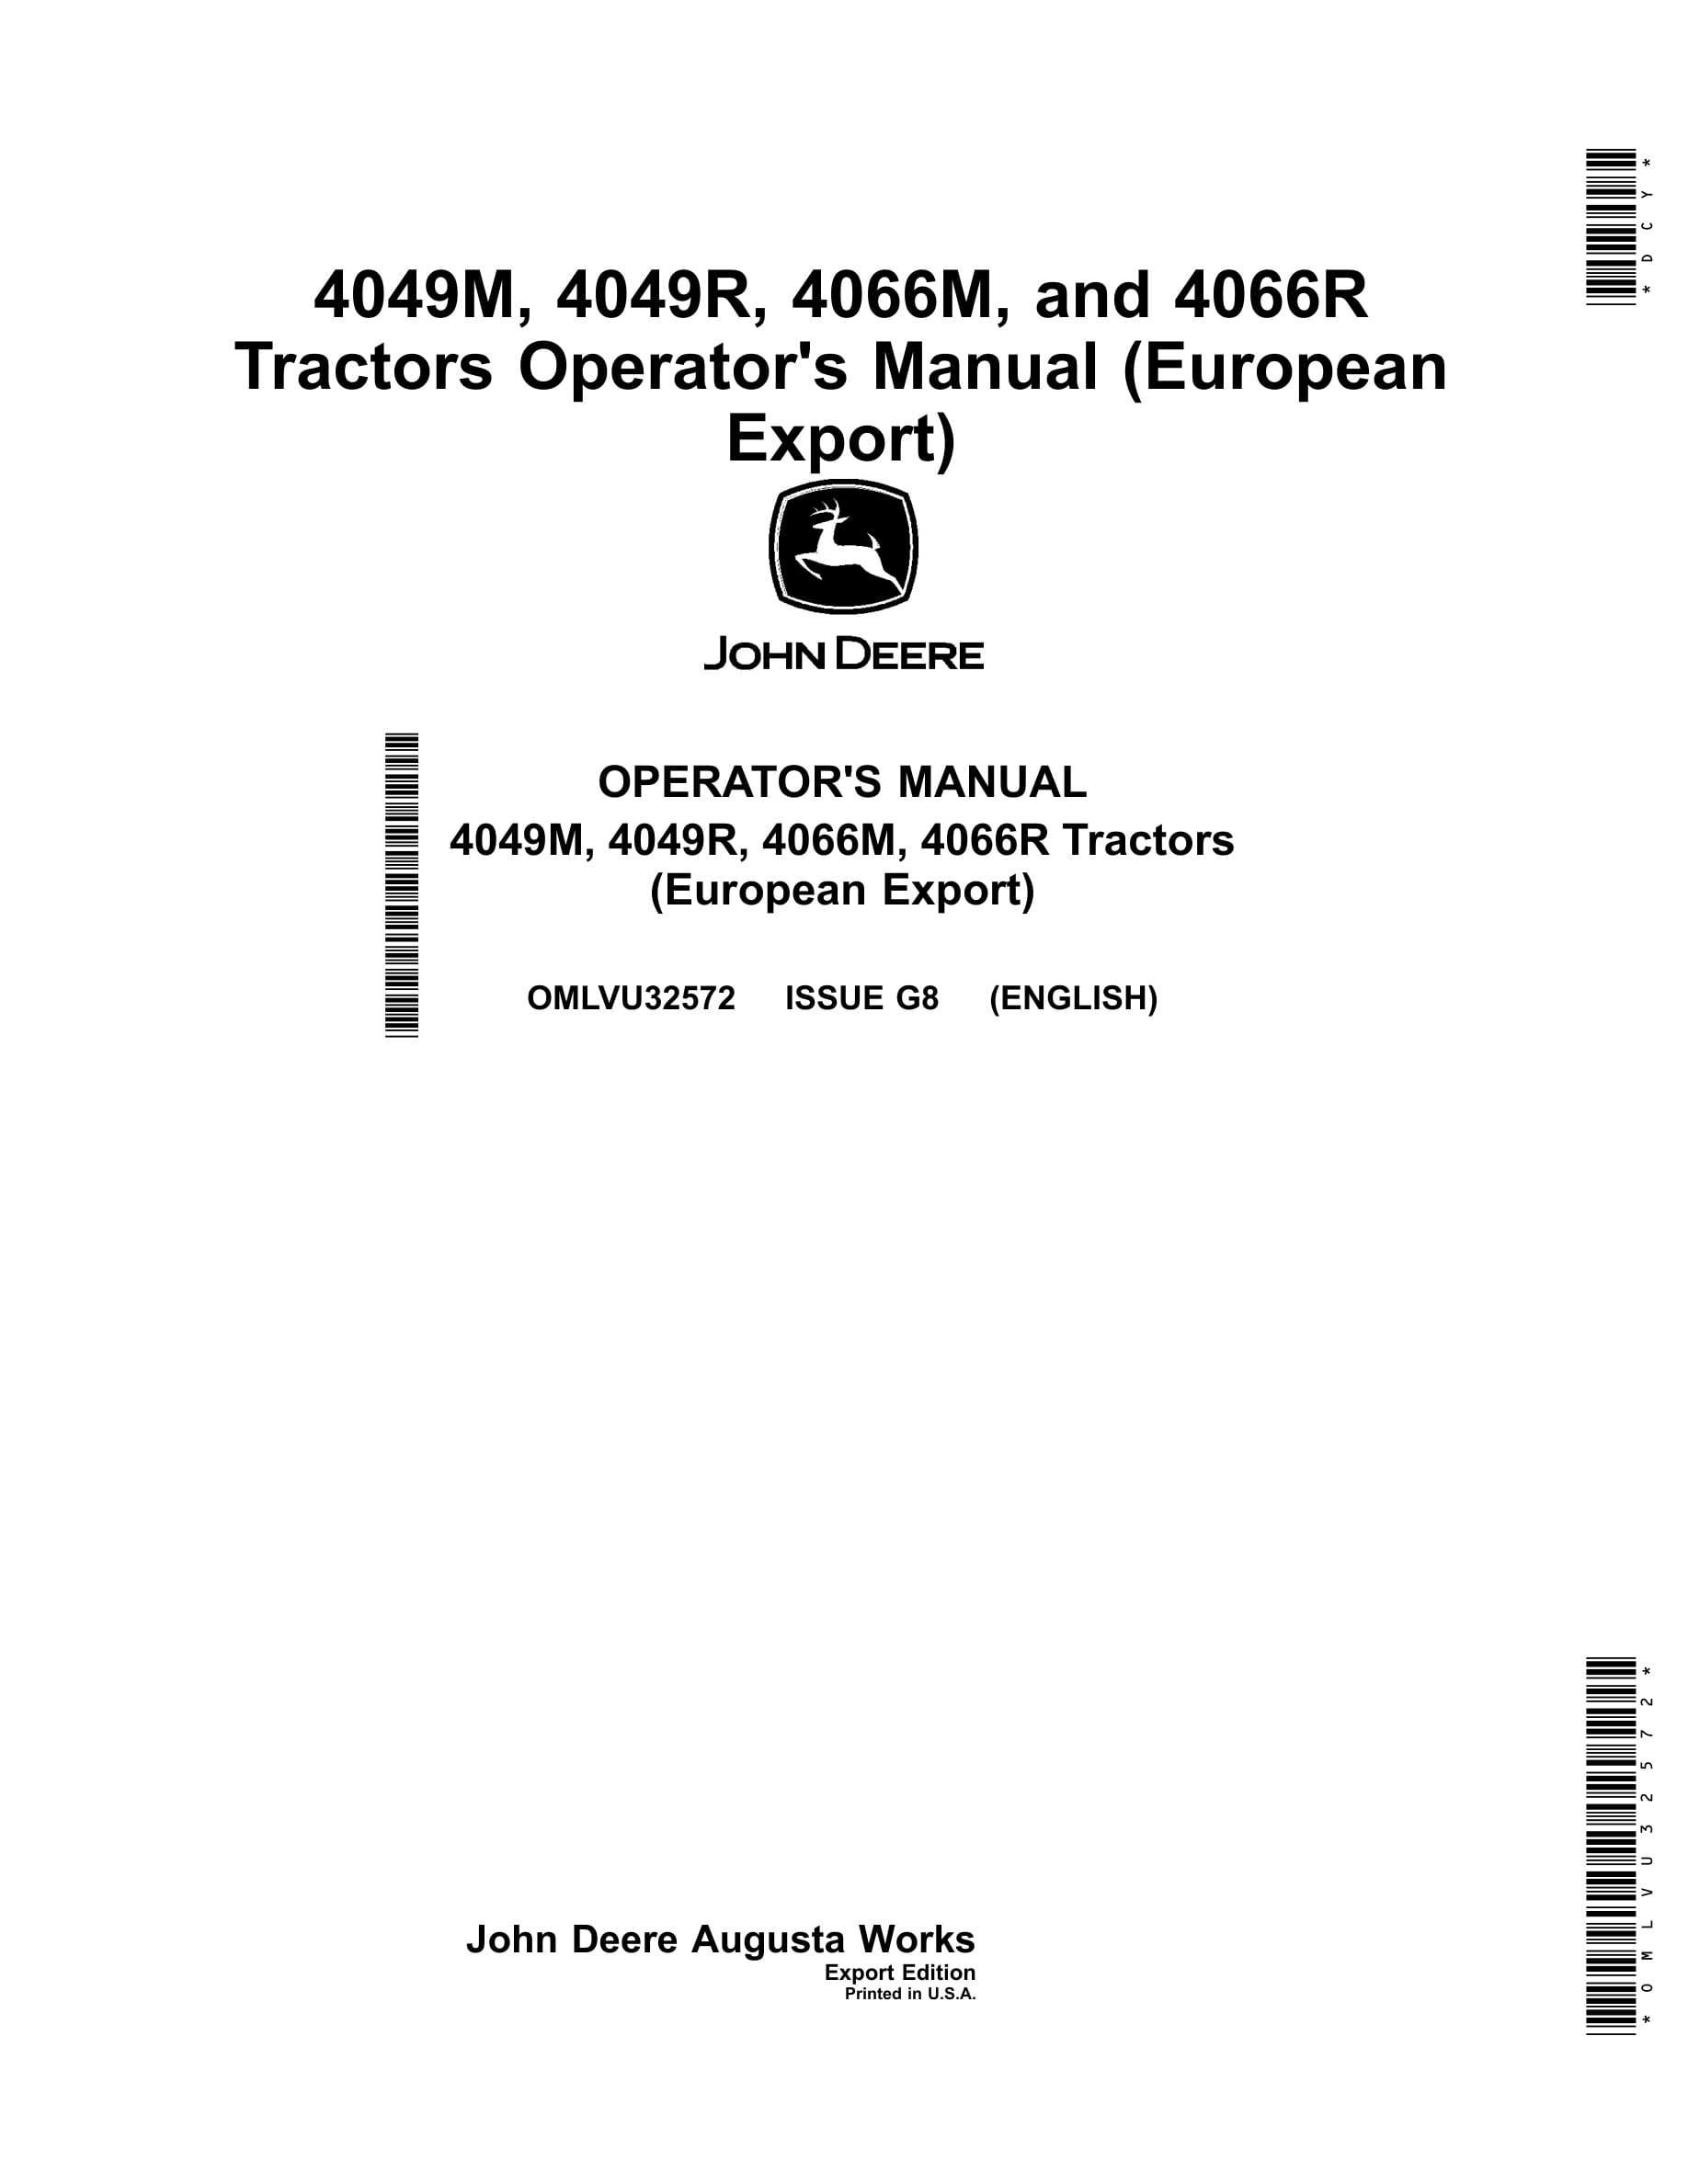 John Deere 4049m, 4049r, 4066m, 4066r Tractors Operator Manuals OMLVU32572-1